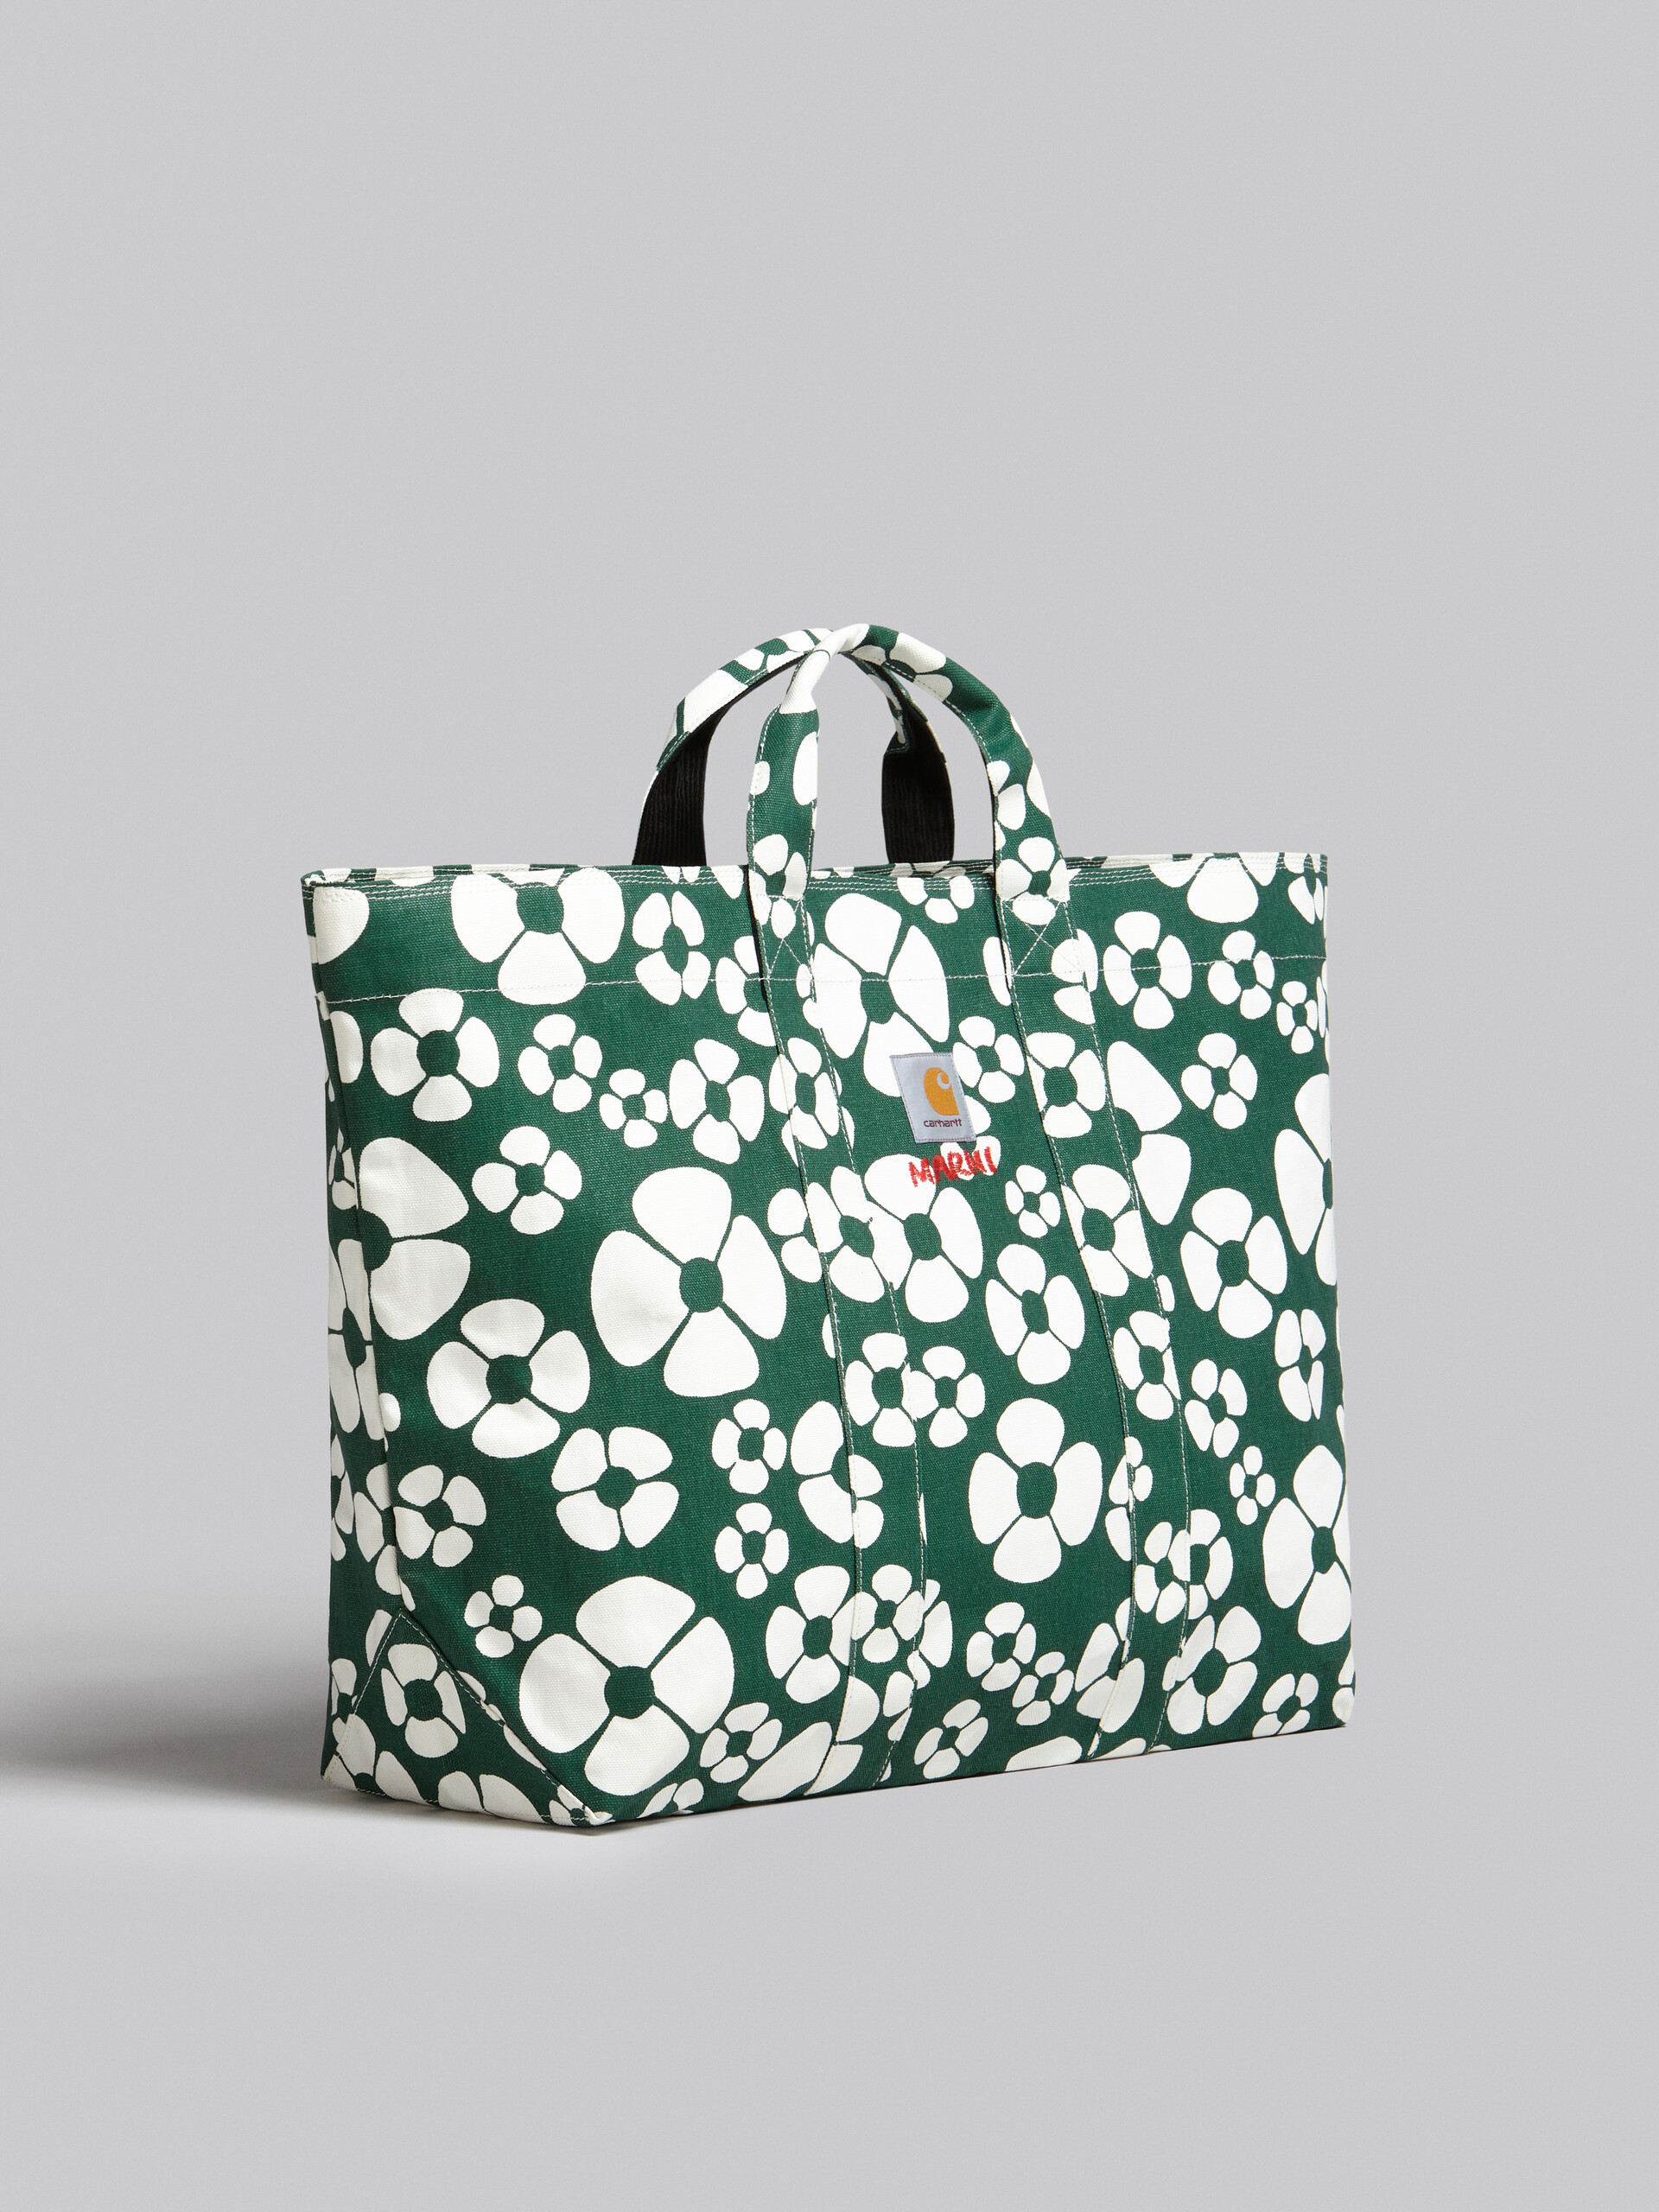 MARNI x CARHARTT WIP - green shopper - Shopping Bags - Image 6